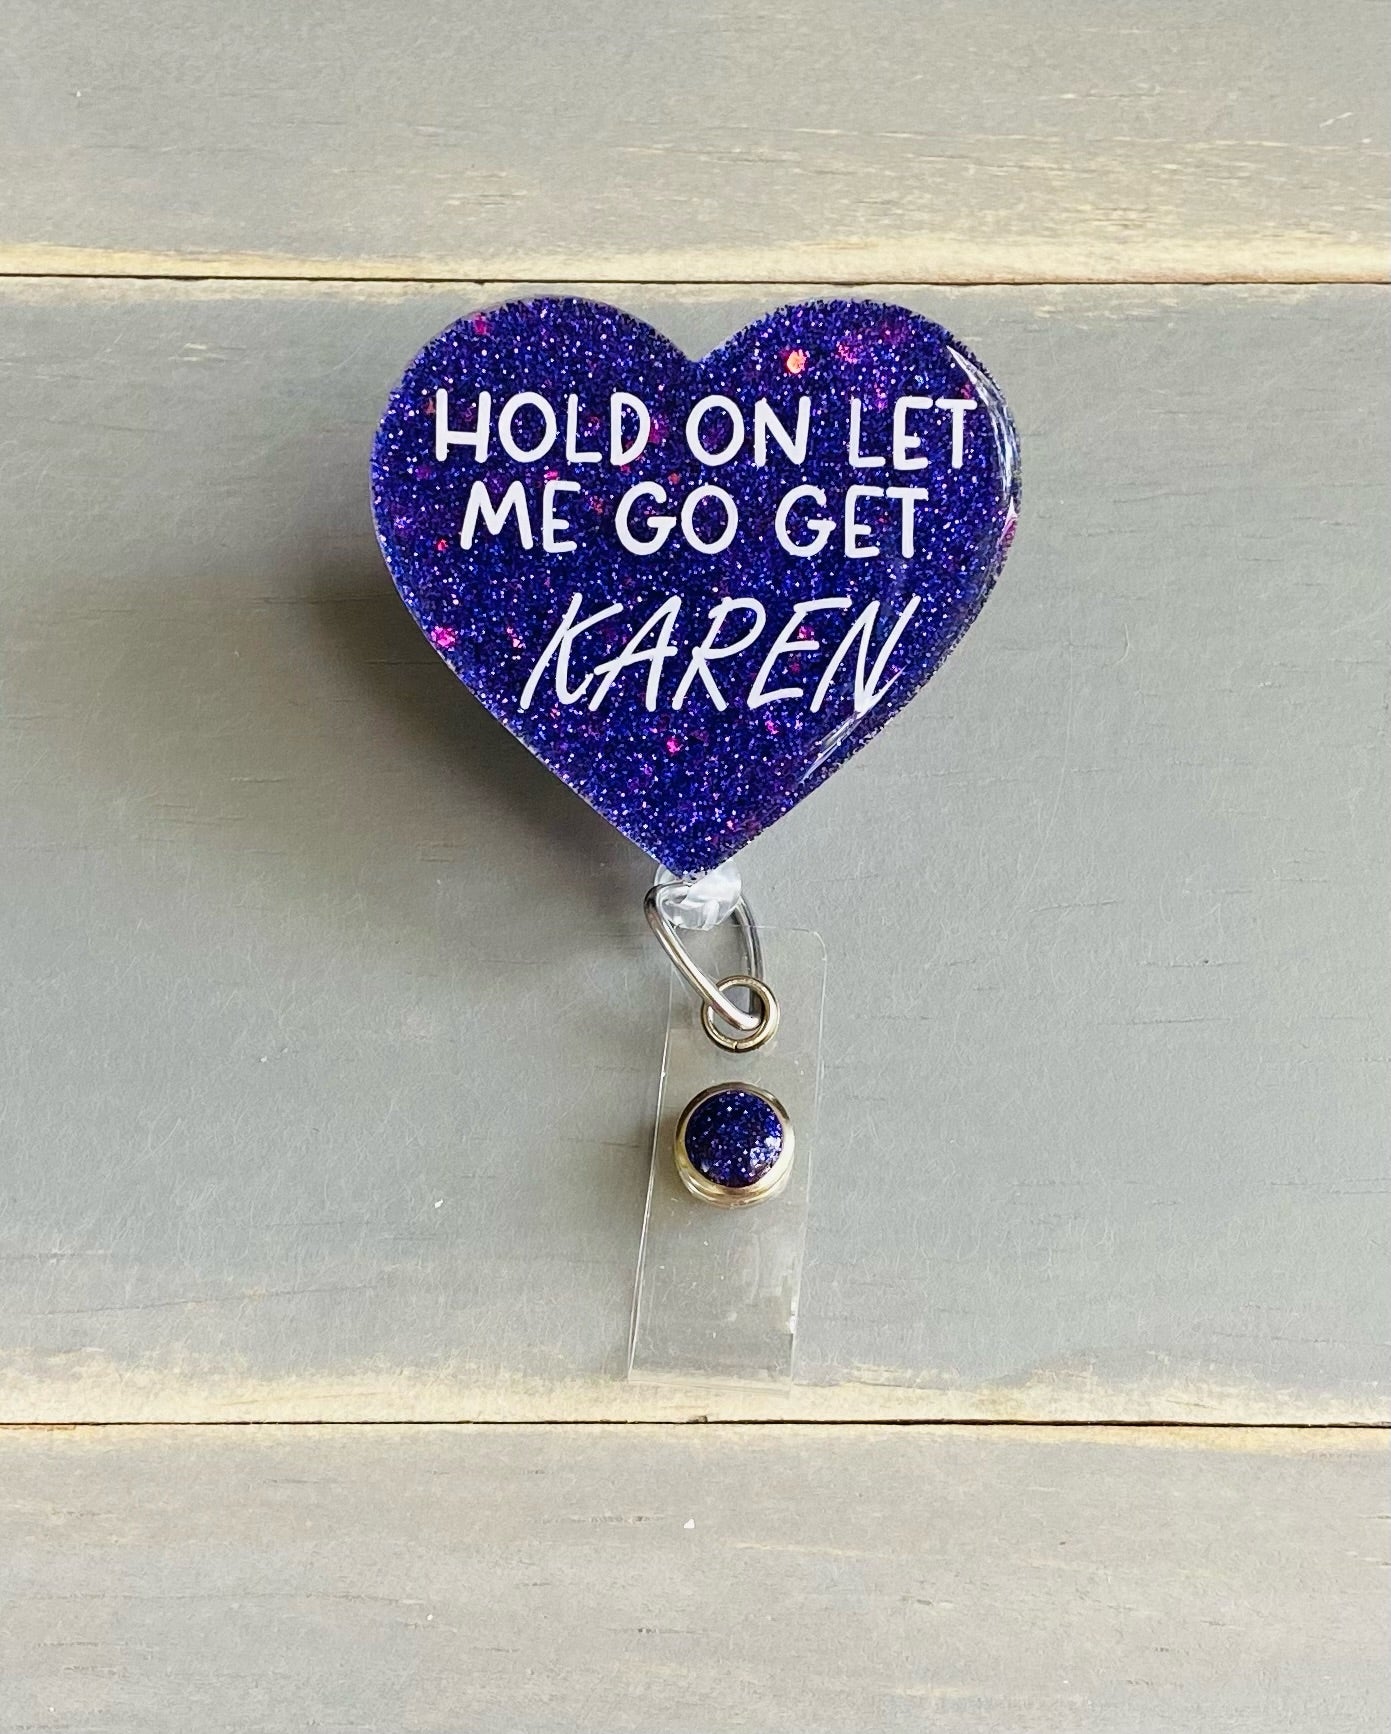 Hold On Let Me Go Get Karen Badge Reel